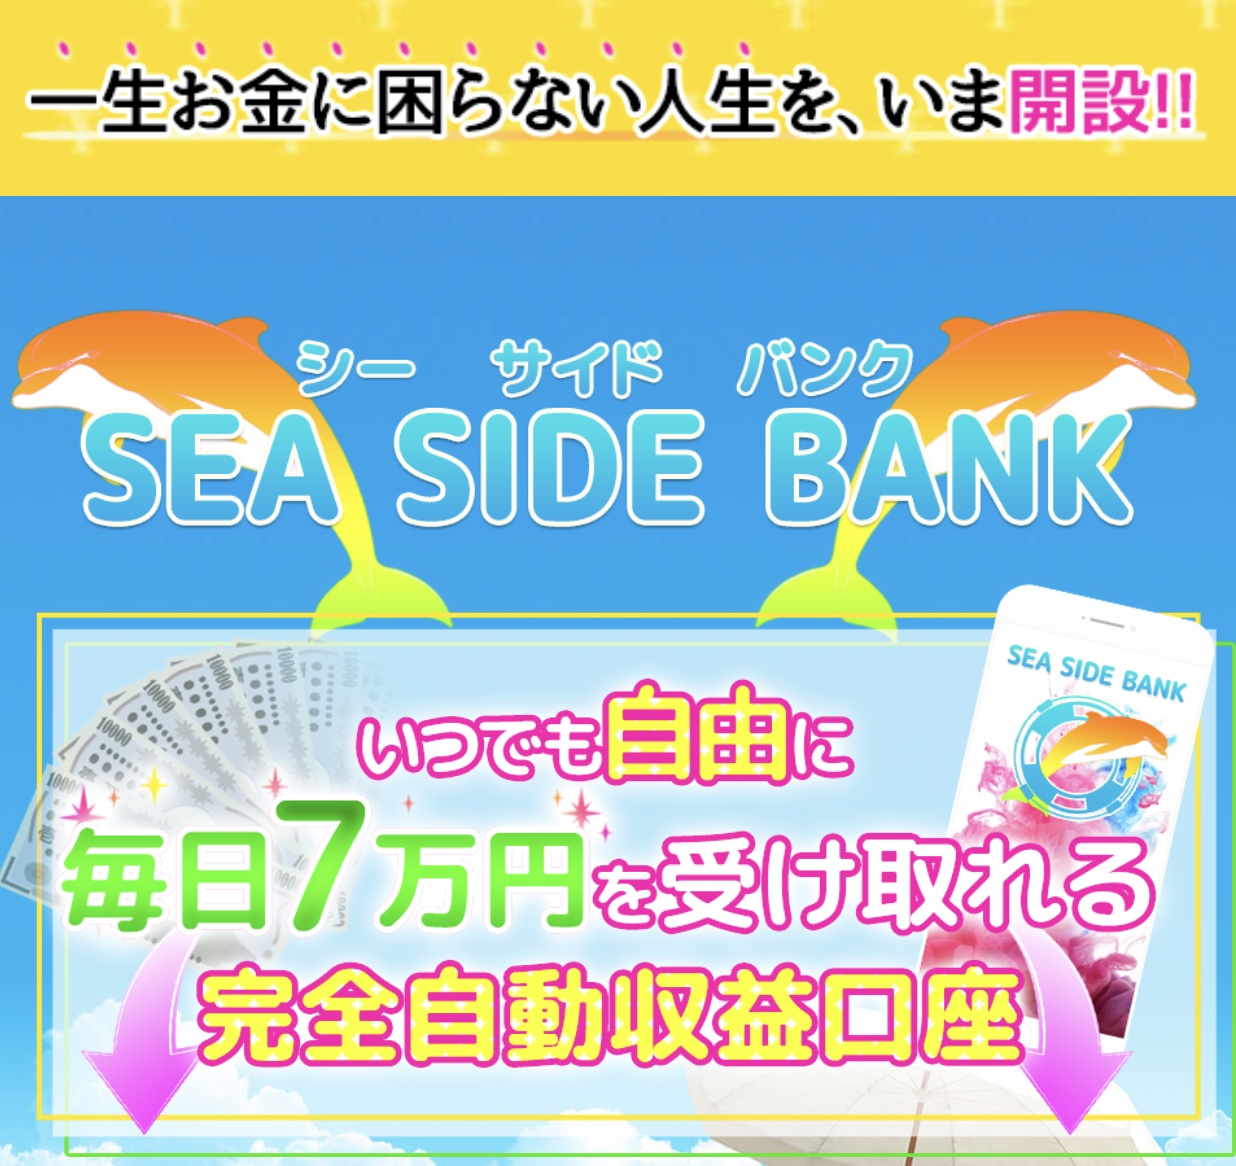 SEA SIDE BANK / シーサイドバンク